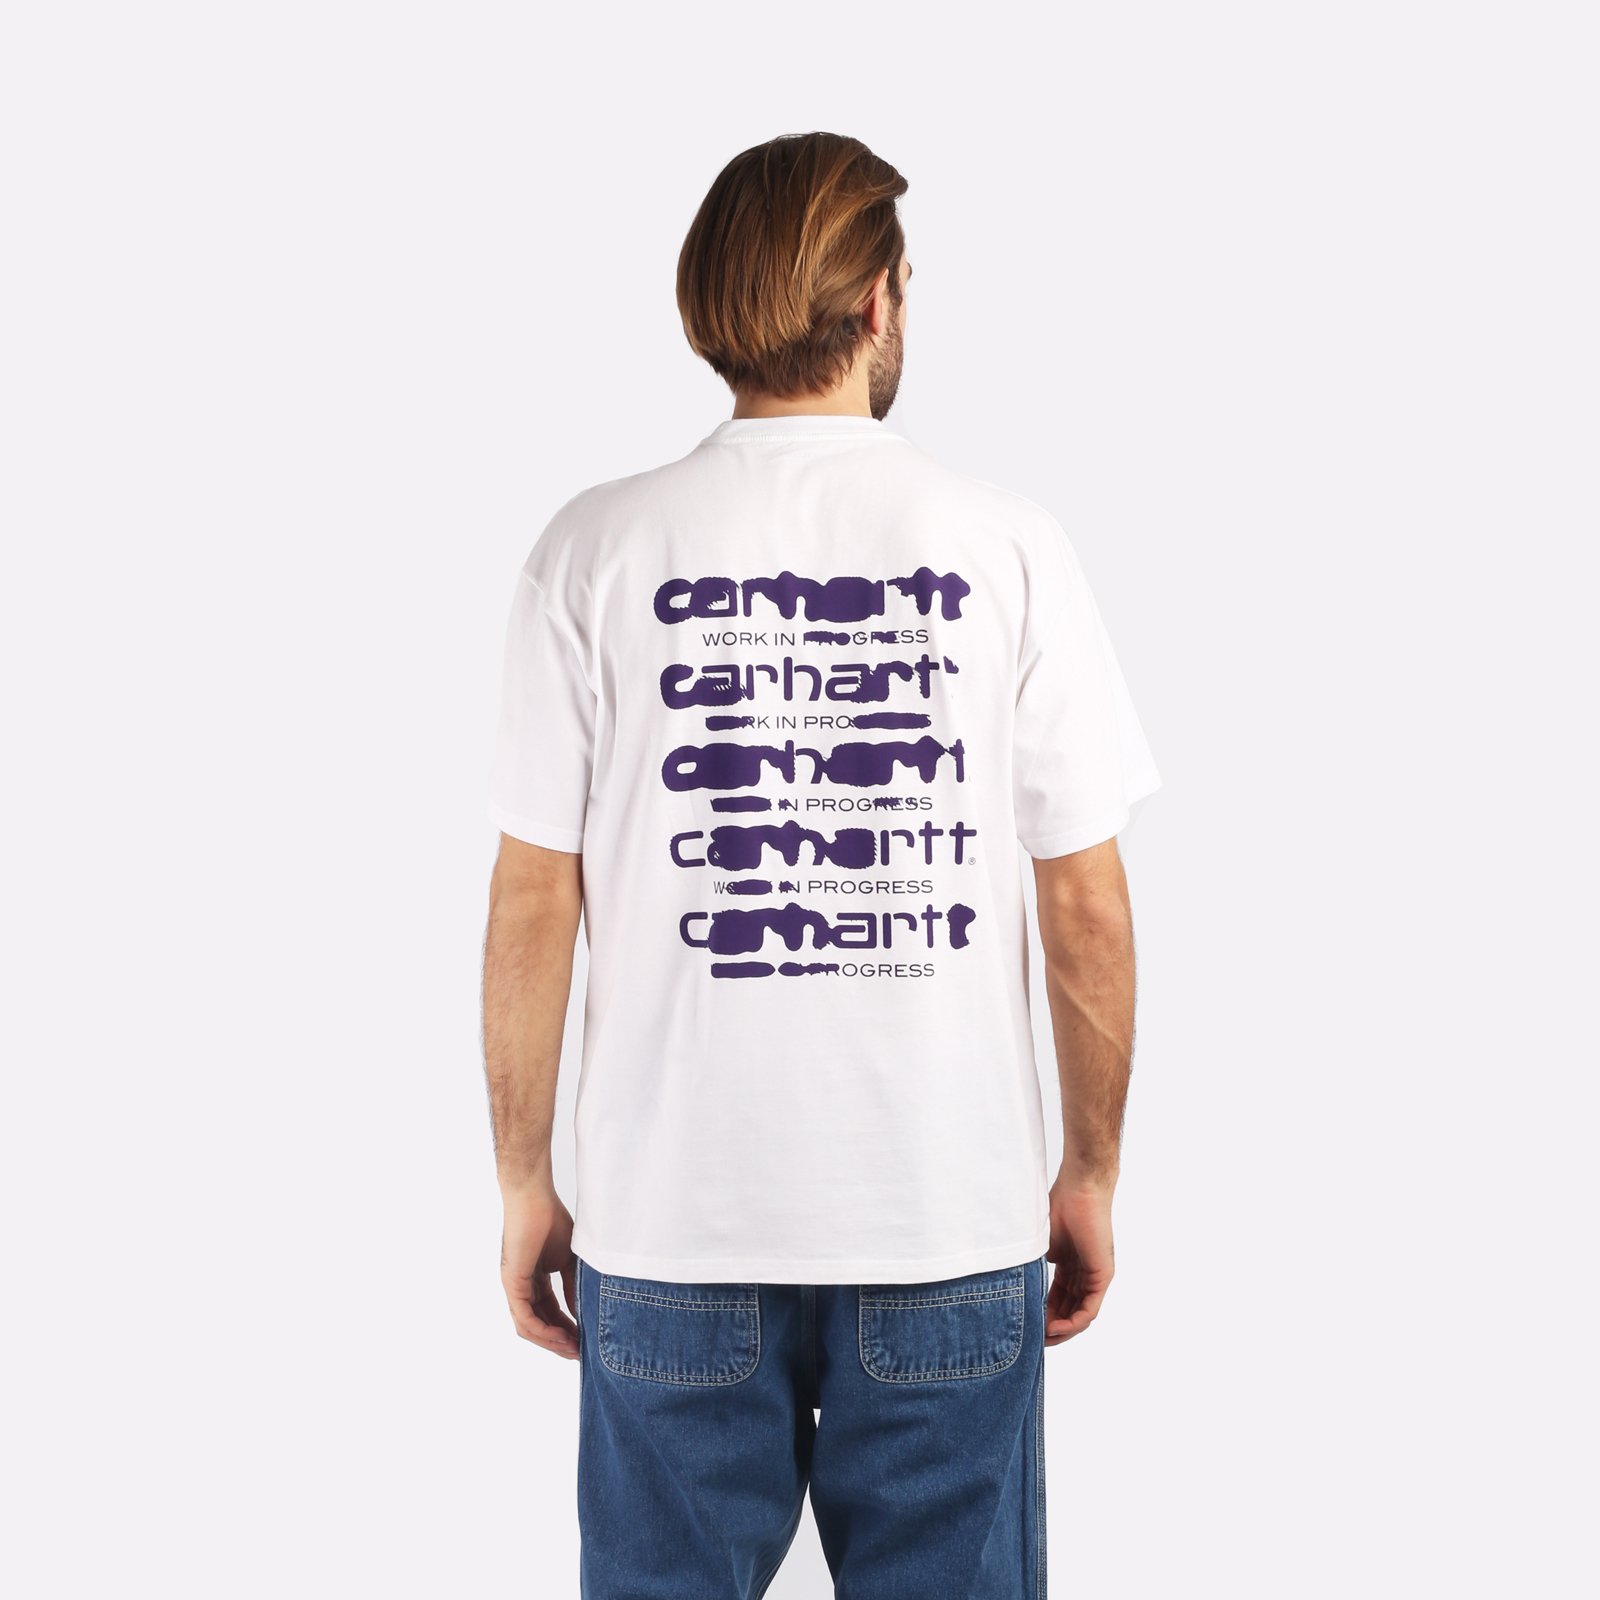 мужская футболка Carhartt WIP S/S Ink Bleed T-Shirt  (I032878-white/tyrian)  - цена, описание, фото 2